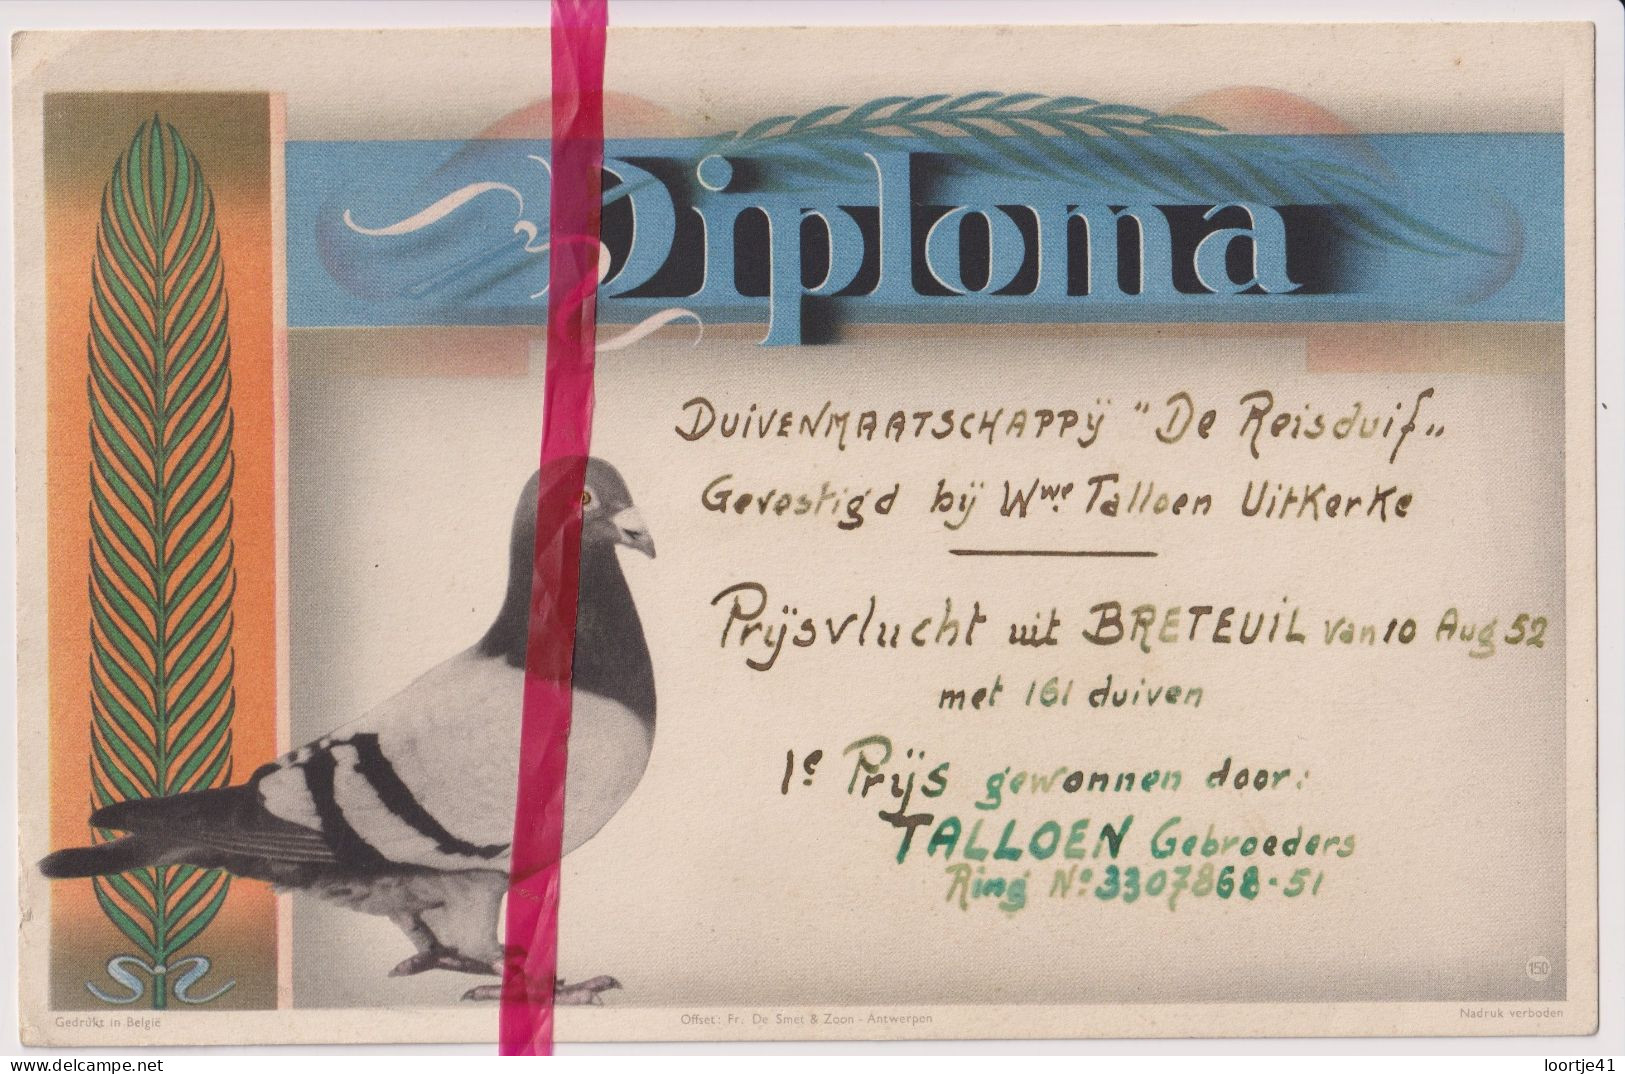 Diploma Duiven 1° Prijs Talloen Gebrs - Uitkerke 1952 - Maatschappij De Reisduif - Diplomas Y Calificaciones Escolares